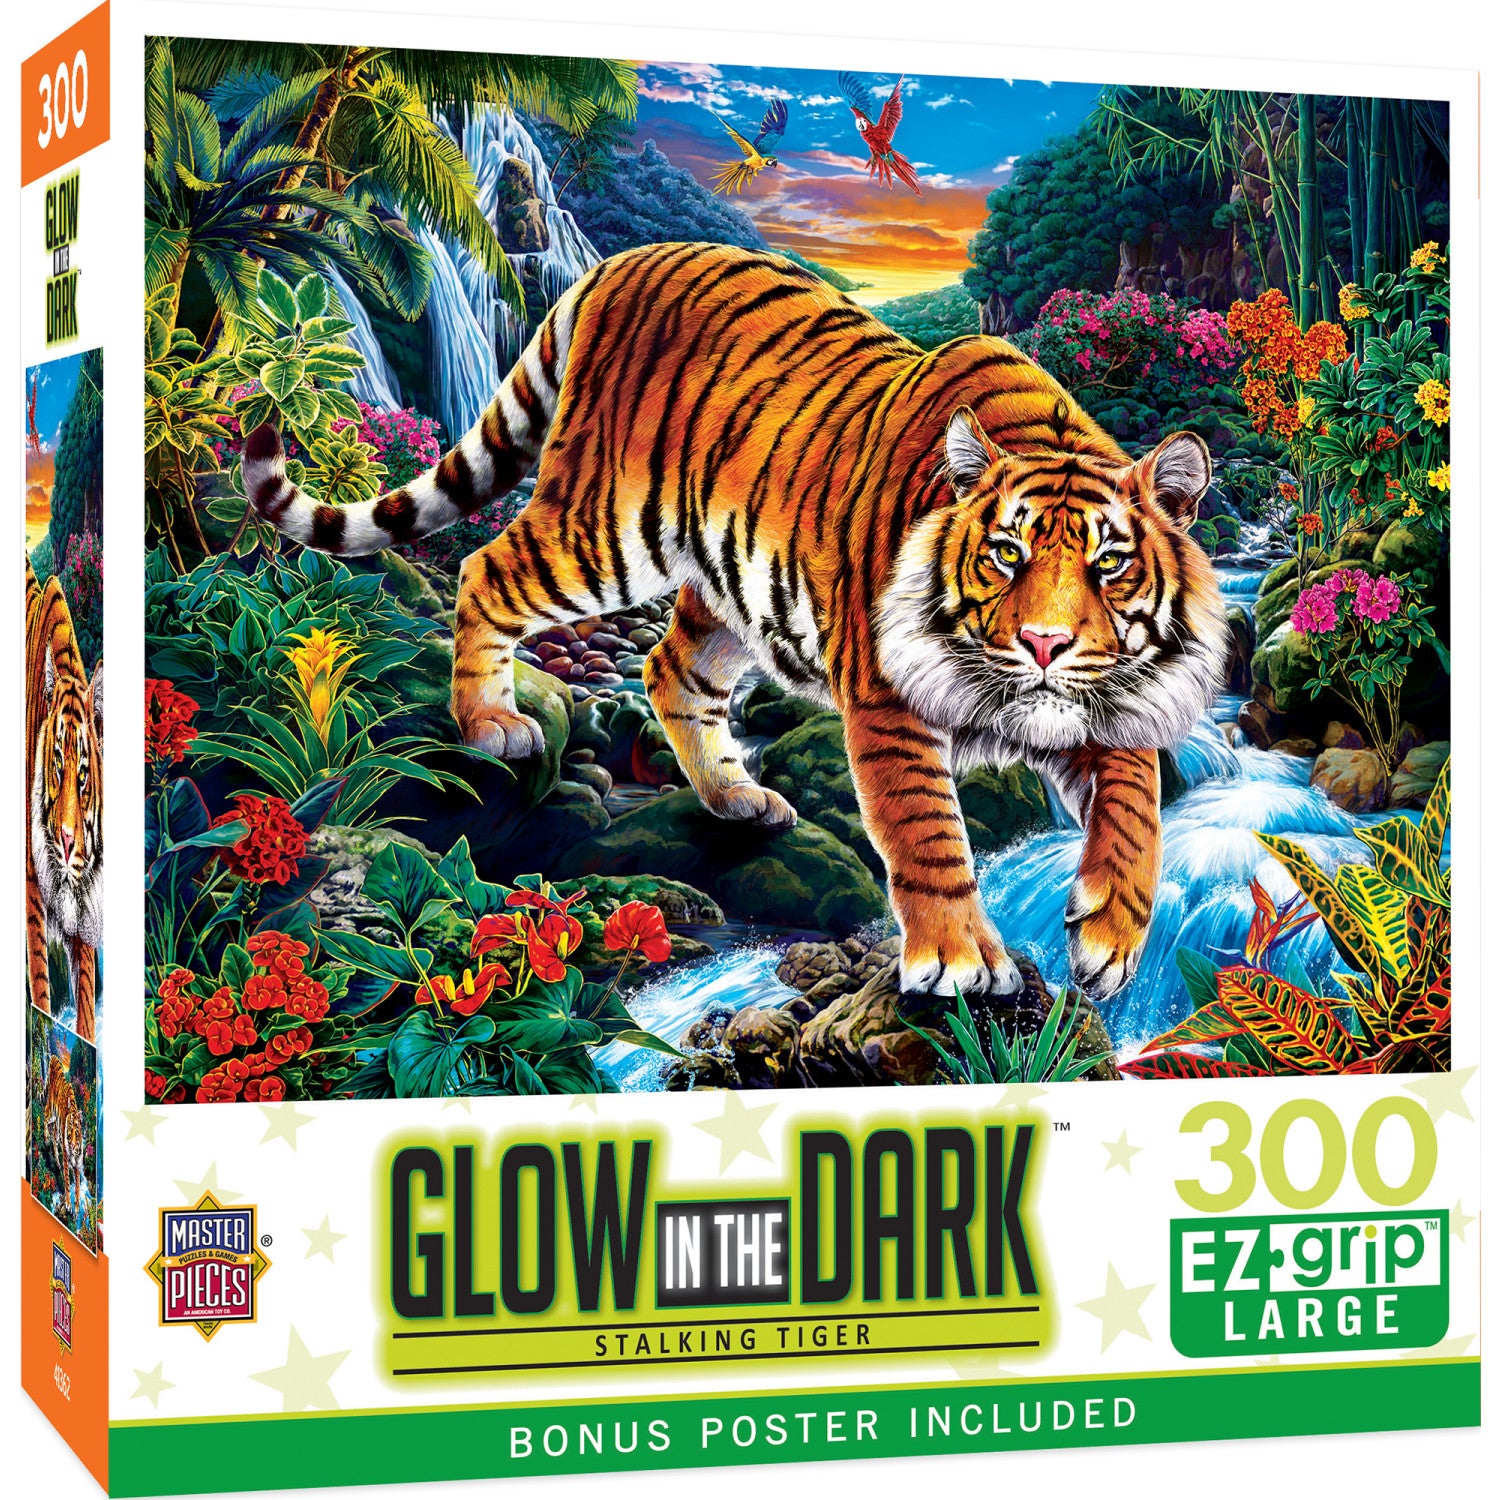 Glow in the Dark - Stalking Tiger 300 Piece EZ Grip Puzzle